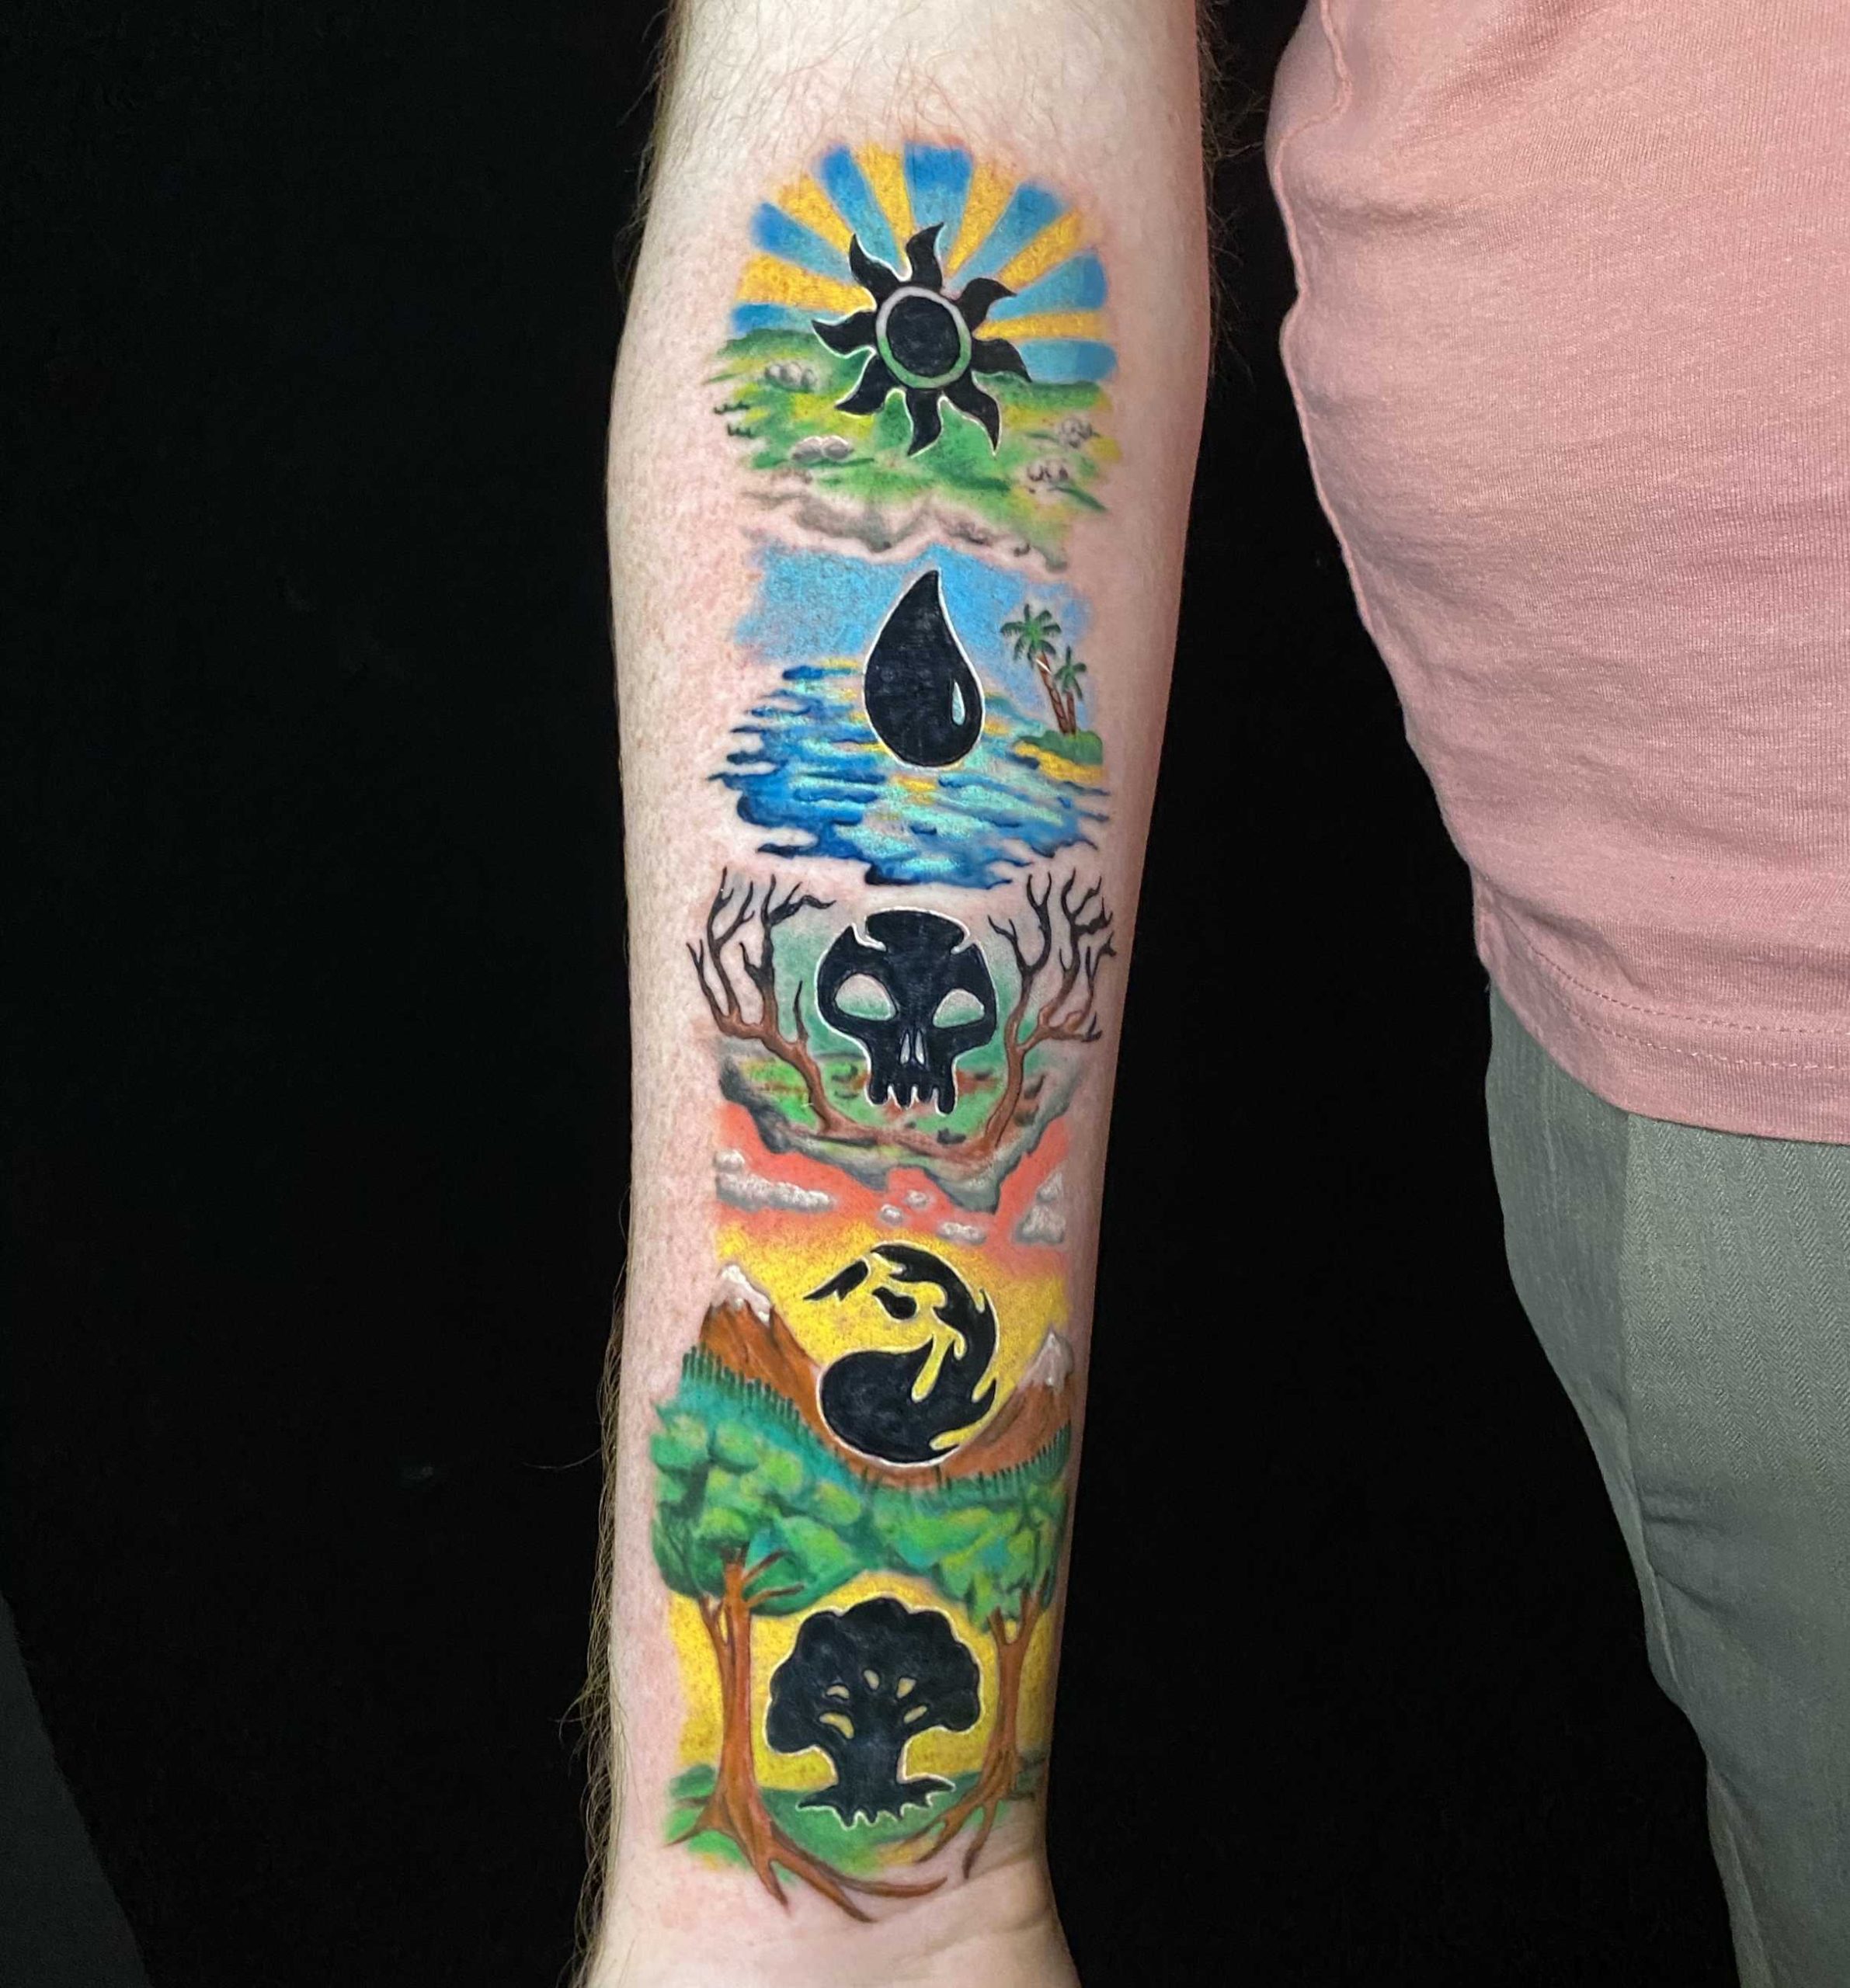 Tattoo uploaded by Cory Costilla • Magic the gathering mana • Tattoodo